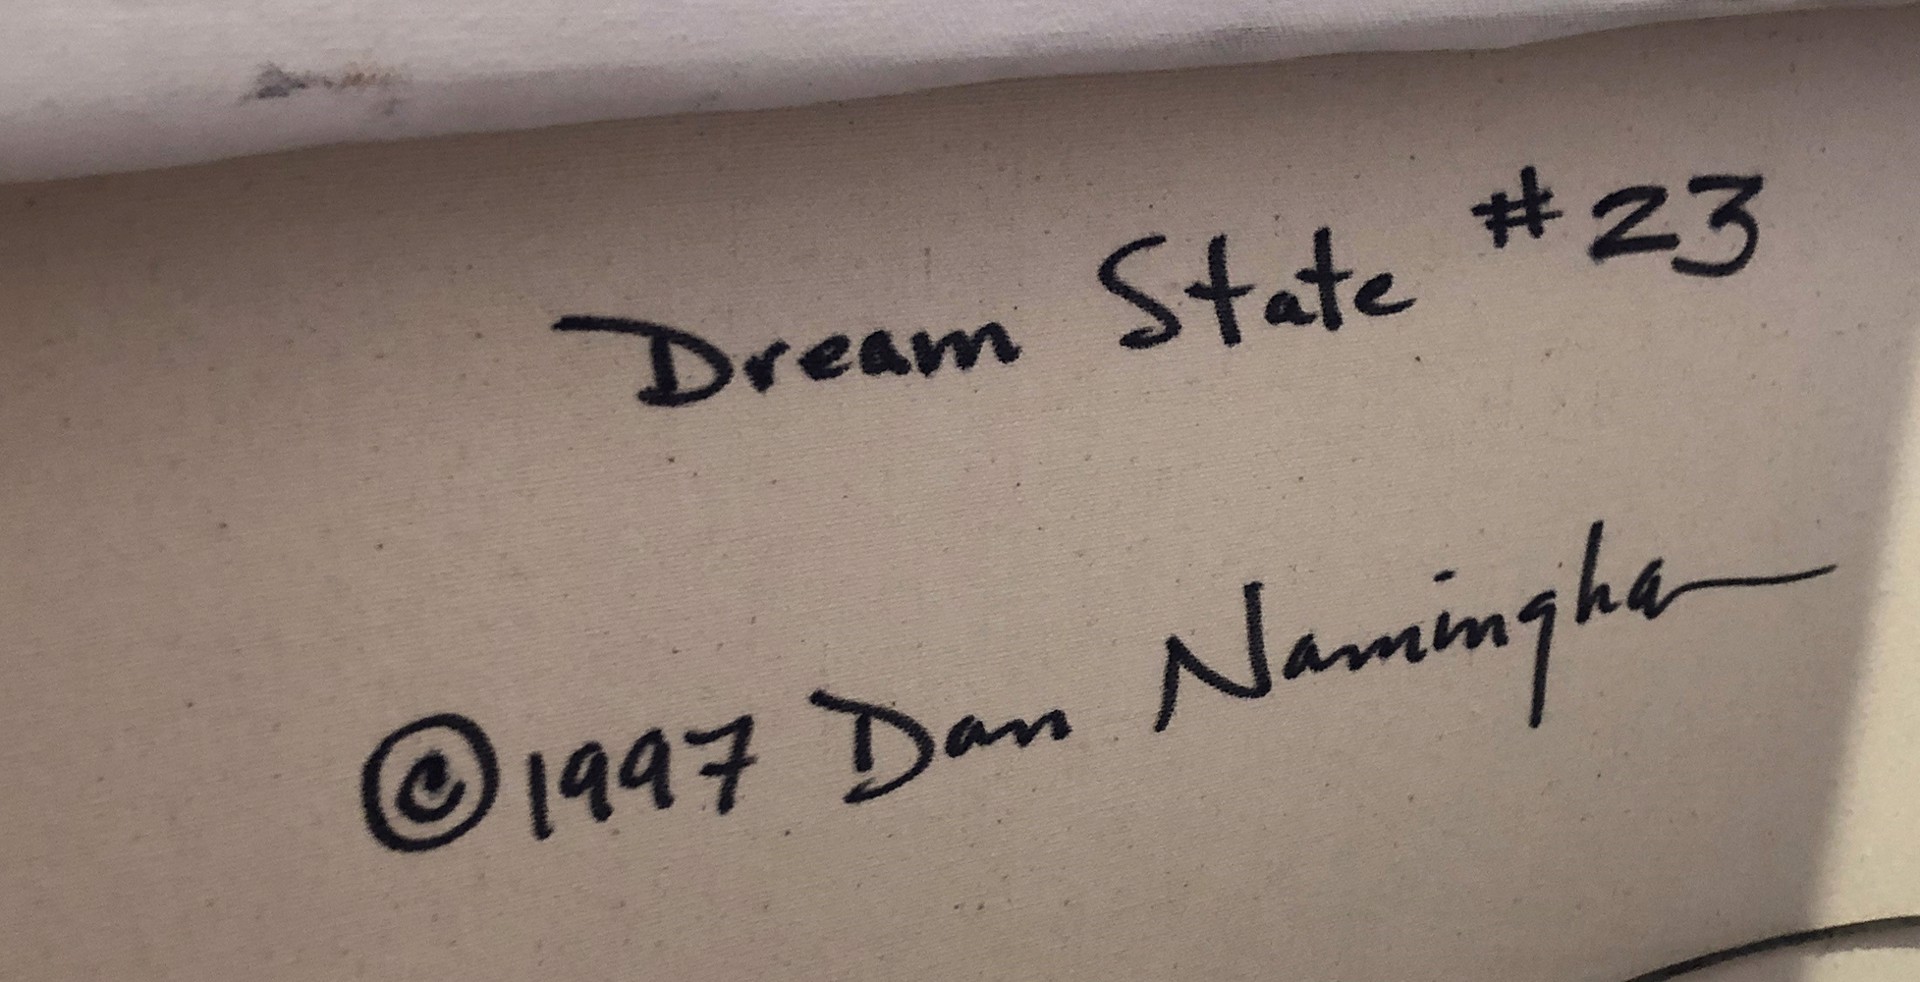 Dream State #23 by Dan Namingha